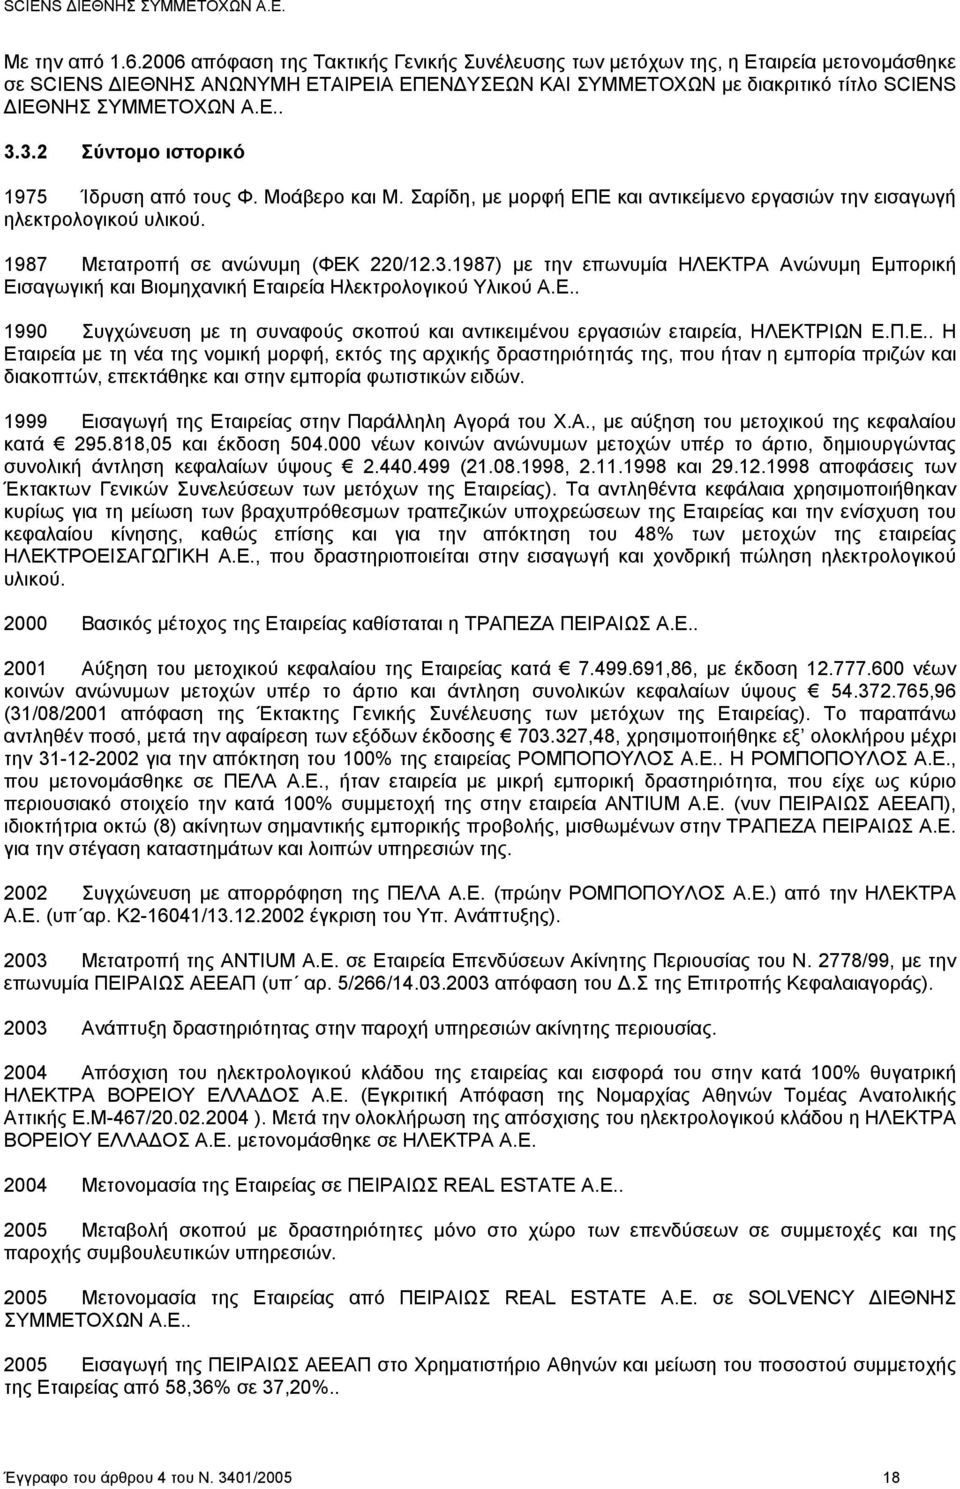 3.2 Σύντομο ιστορικό 1975 Ίδρυση από τους Φ. Μοάβερο και Μ. Σαρίδη, με μορφή ΕΠΕ και αντικείμενο εργασιών την εισαγωγή ηλεκτρολογικού υλικού. 1987 Μετατροπή σε ανώνυμη (ΦΕΚ 220/12.3.1987) με την επωνυμία ΗΛΕΚΤΡΑ Ανώνυμη Εμπορική Εισαγωγική και Βιομηχανική Εταιρεία Ηλεκτρολογικού Υλικού Α.